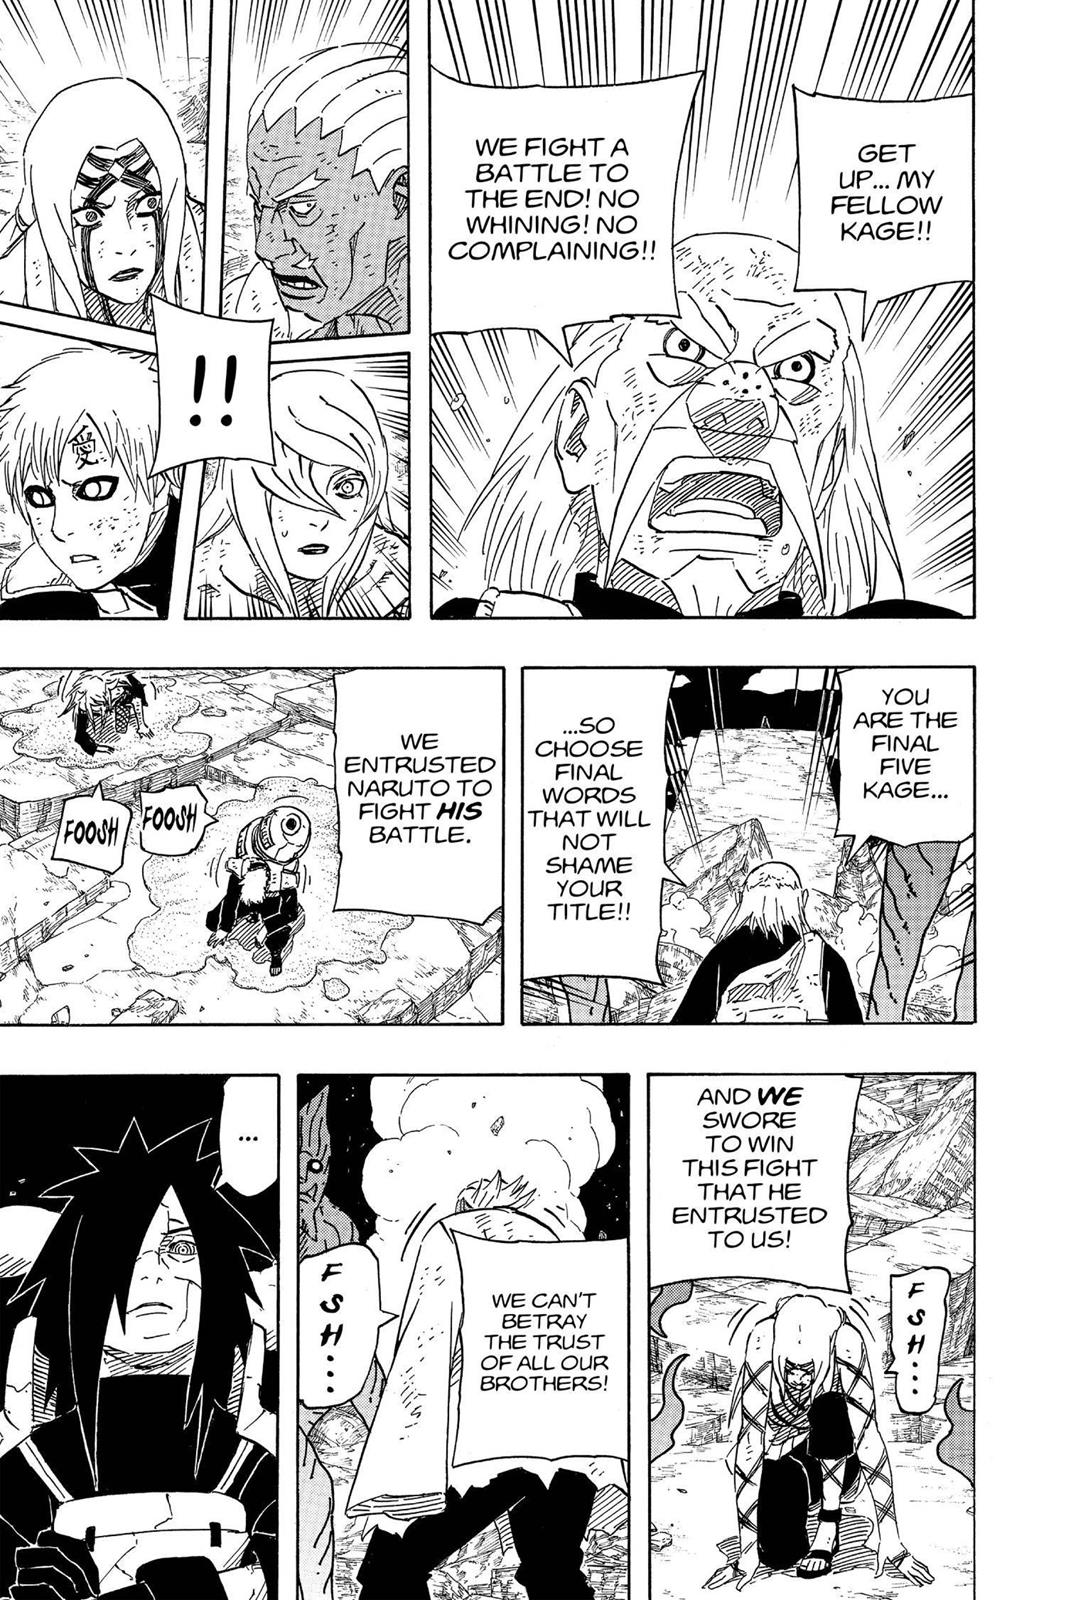 Faz algum sentido acreditar que Jiraiya é superior a Tsunade e Orochimaru? - Página 2 18